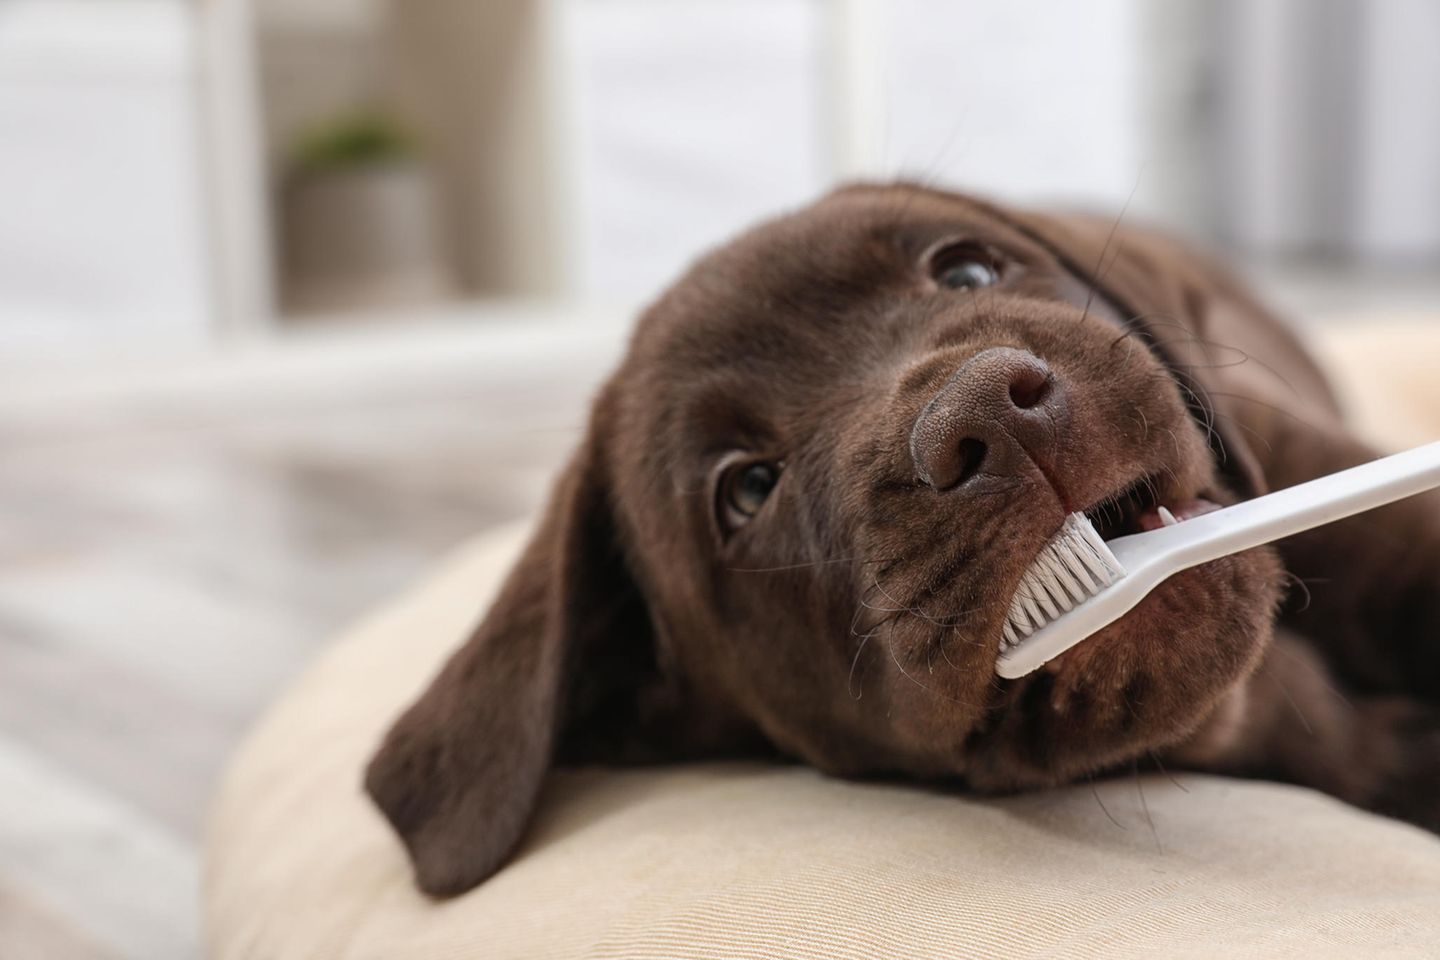 Das Zähneputzen lernen Hunde idealerweise bereits im Welpenalter. Aber auch ausgewachsene Vierbeiner gewöhnen sich mit den richtigen Tricks schnell an die Zahnpflege